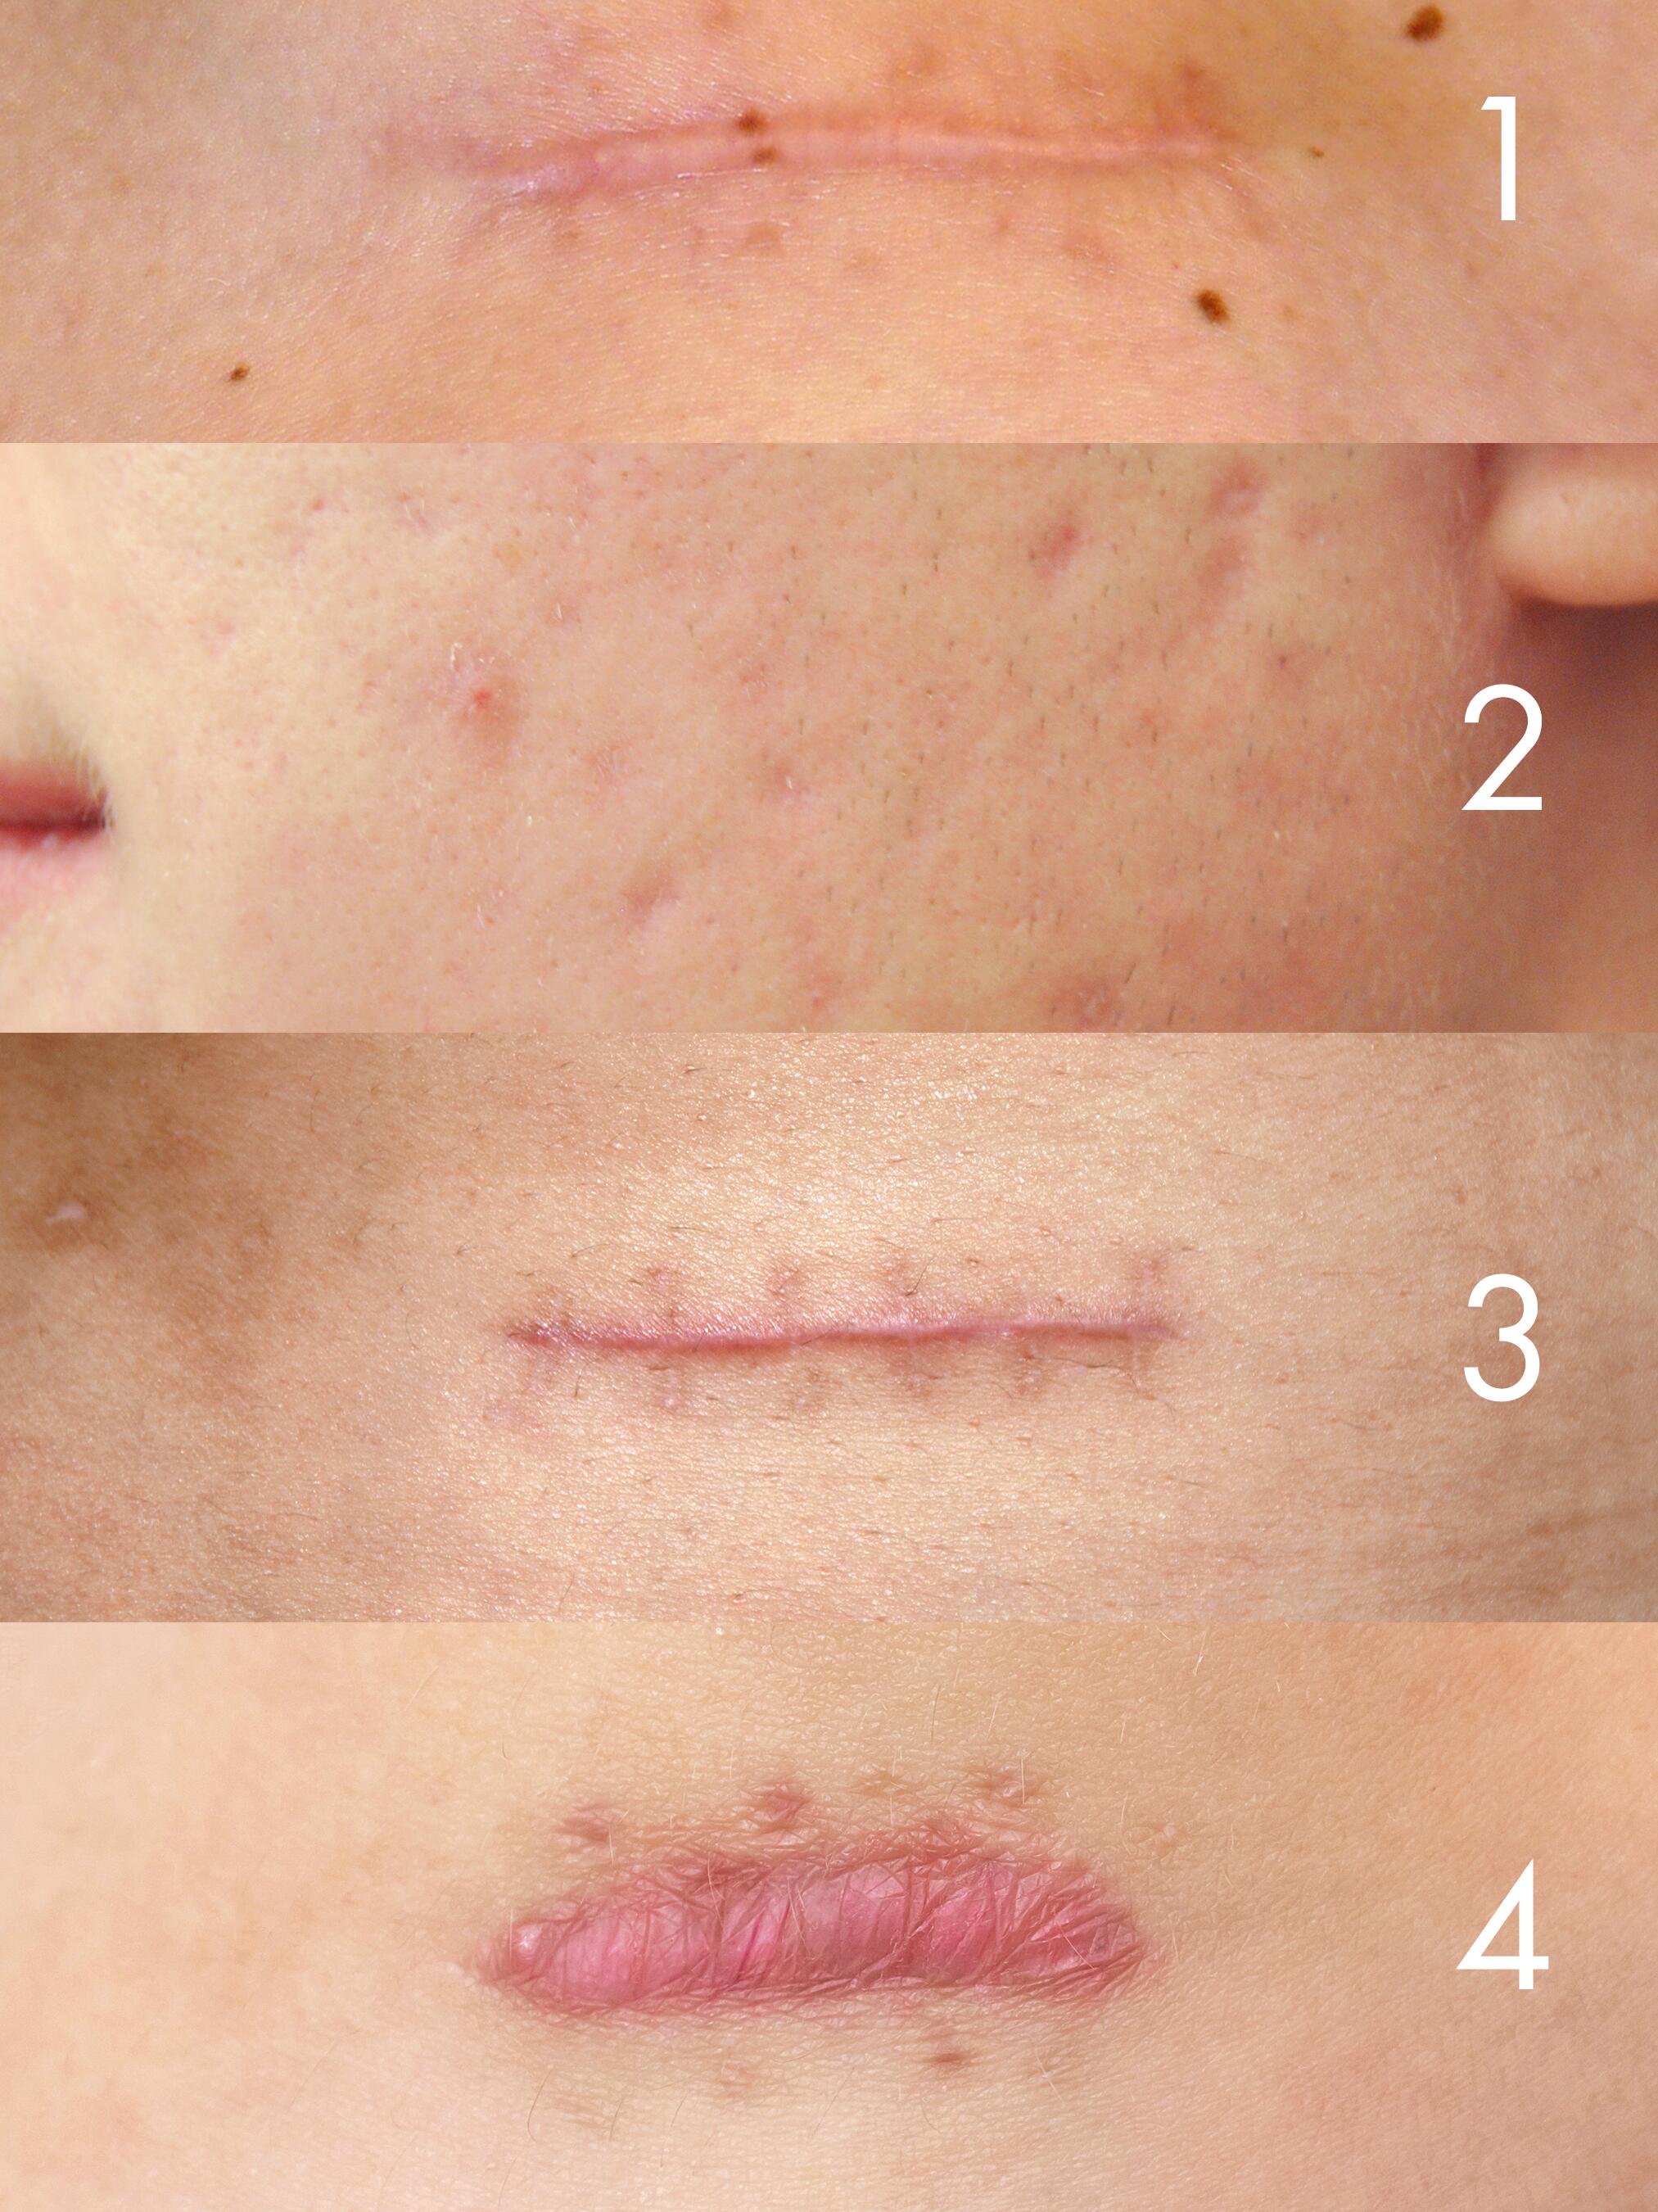 Cicatrisation de la peau : aider l'épiderme à cicatriser